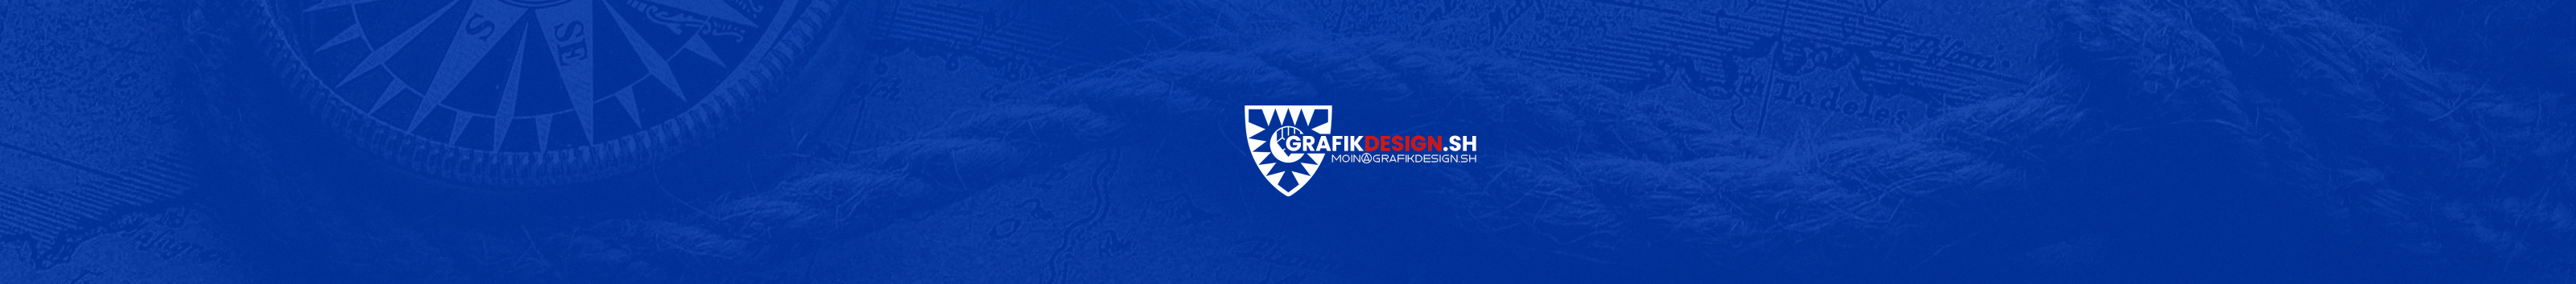 GrafikDesign SH's profile banner